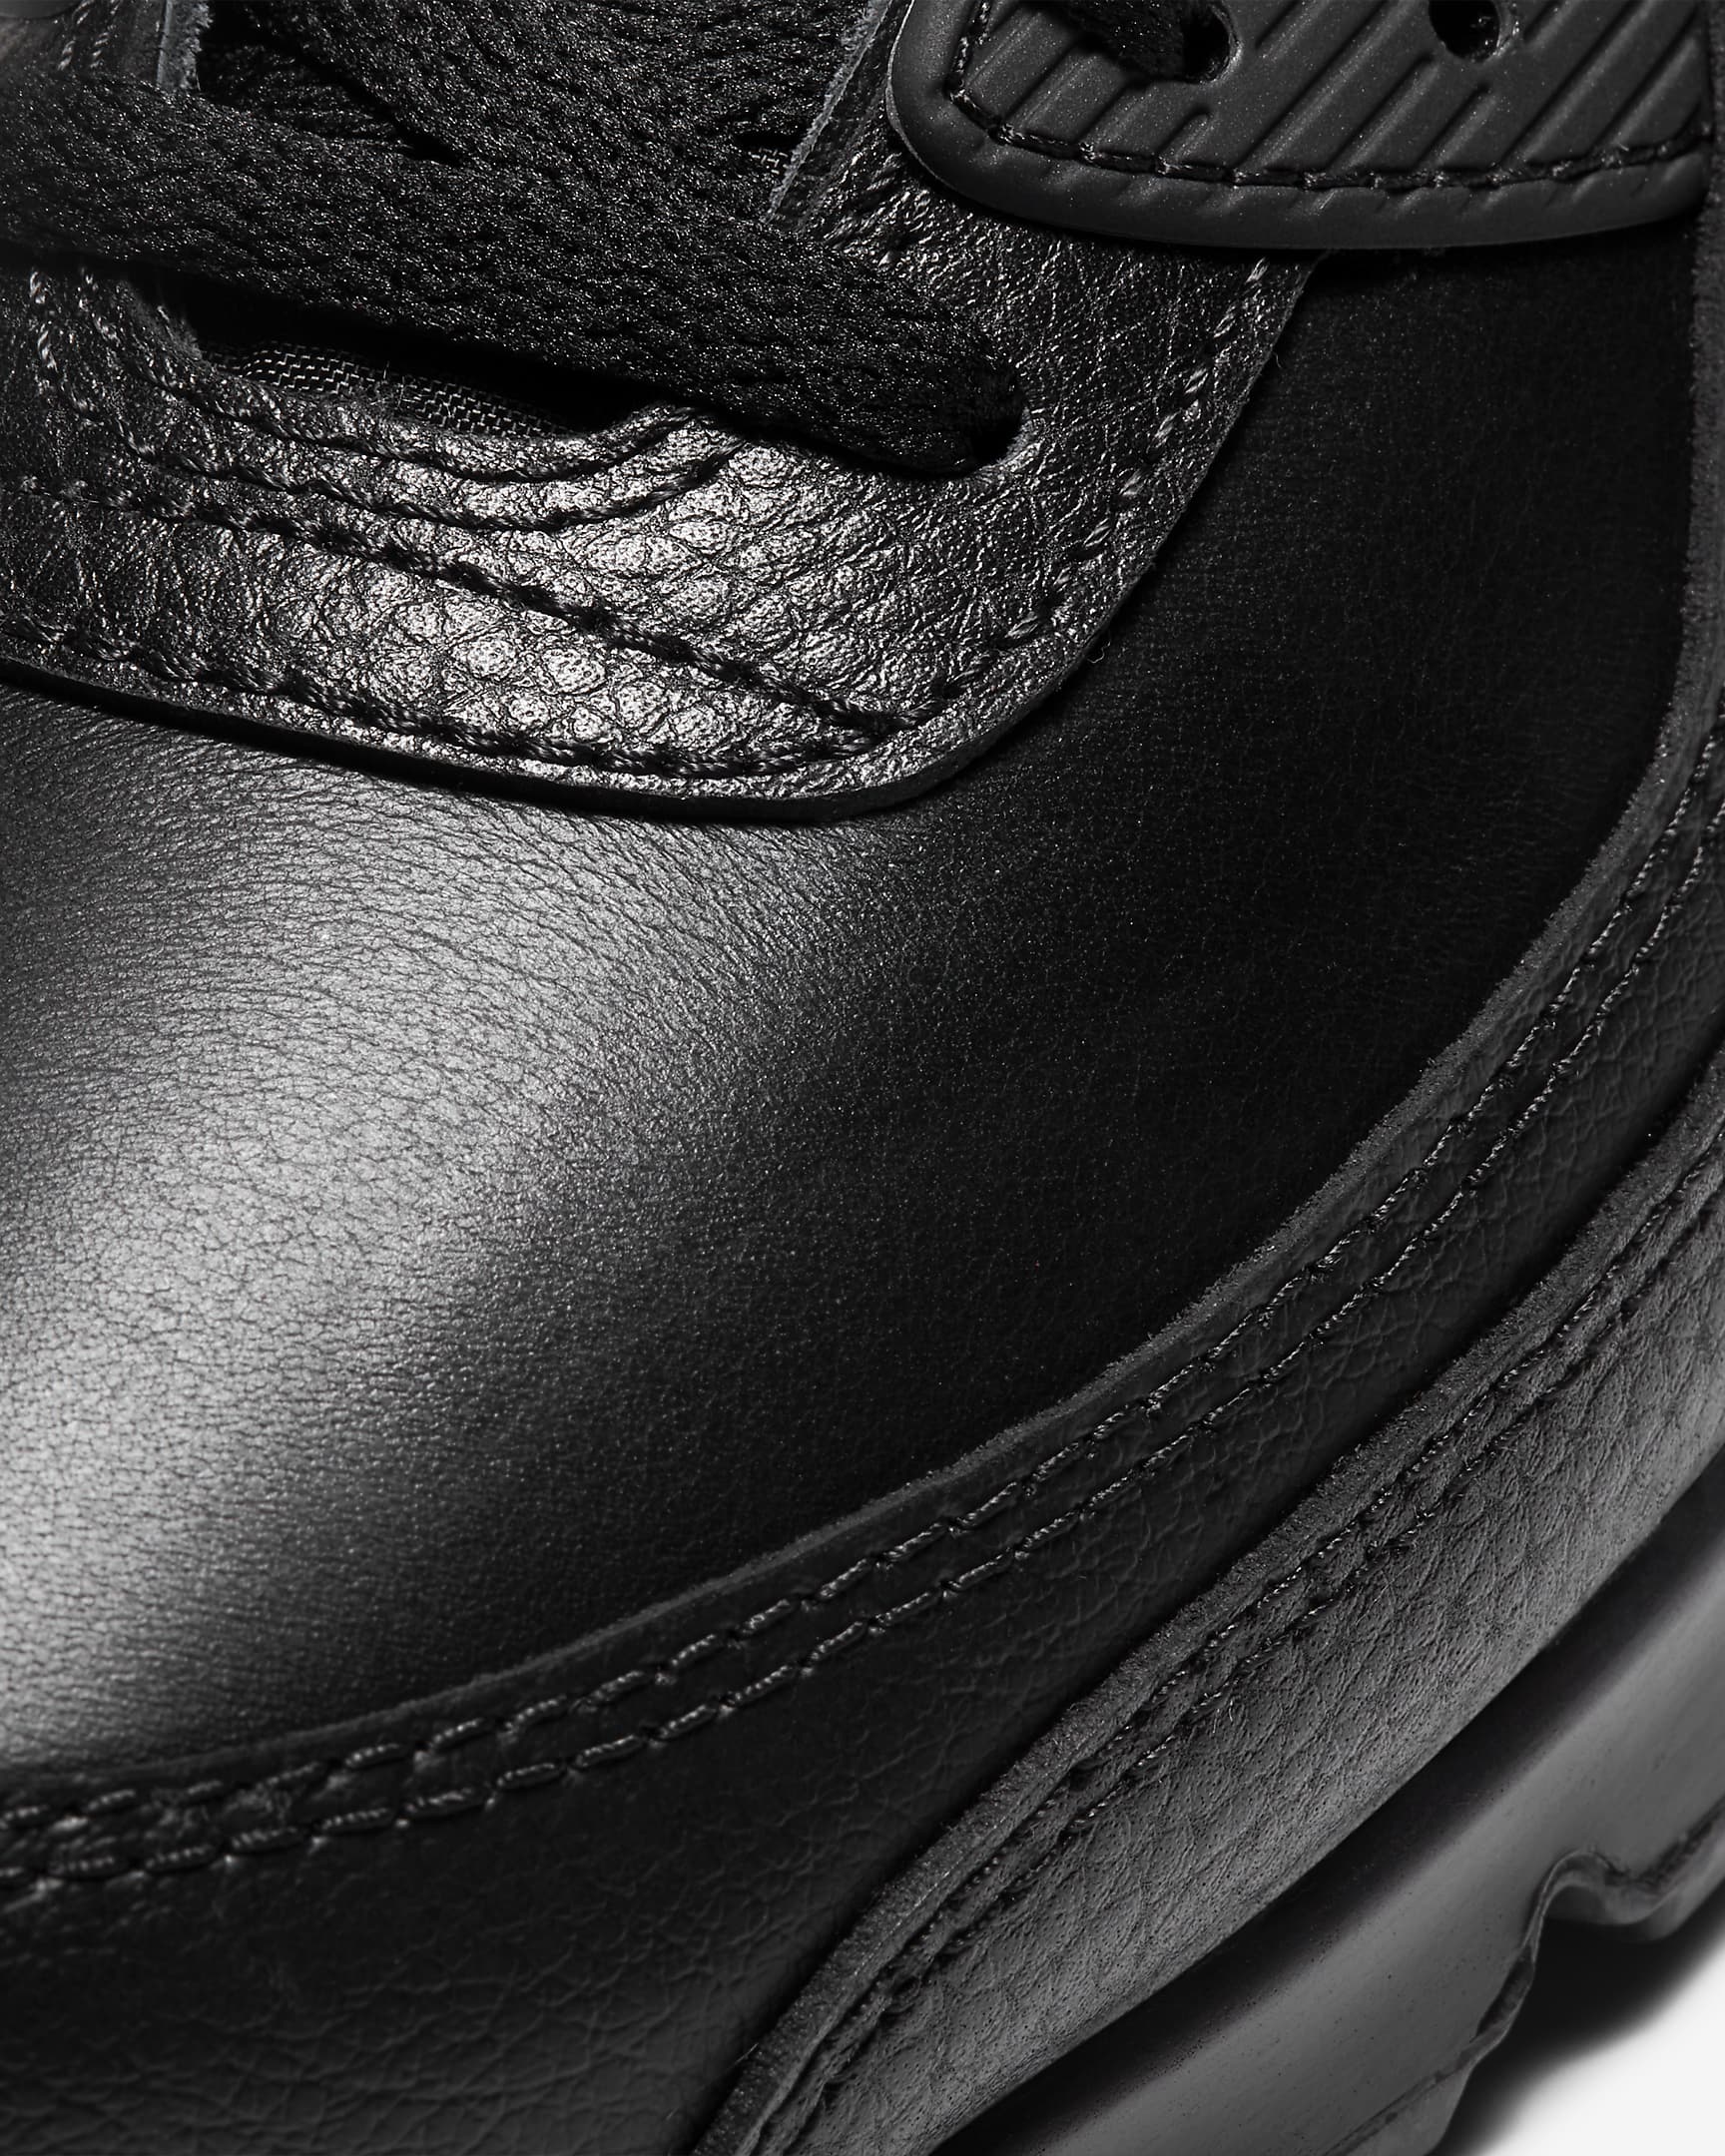 Chaussure Air Max 90 LTR pour homme - Noir/Noir/Noir